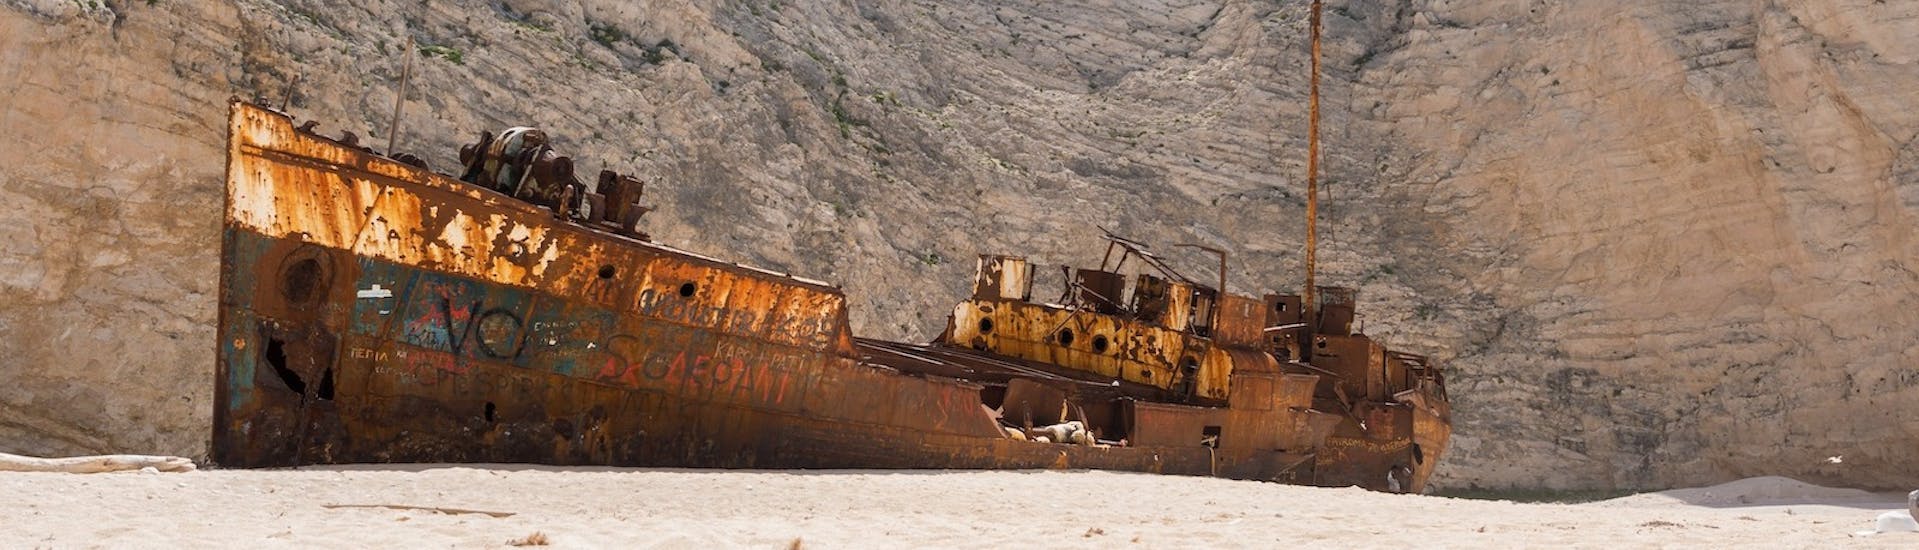 Imagen del famoso barco hundido en la playa del Naufragio, visitado durante el paseo en barco a la playa del Naufragio y las Cuevas Azules con Best of Zante